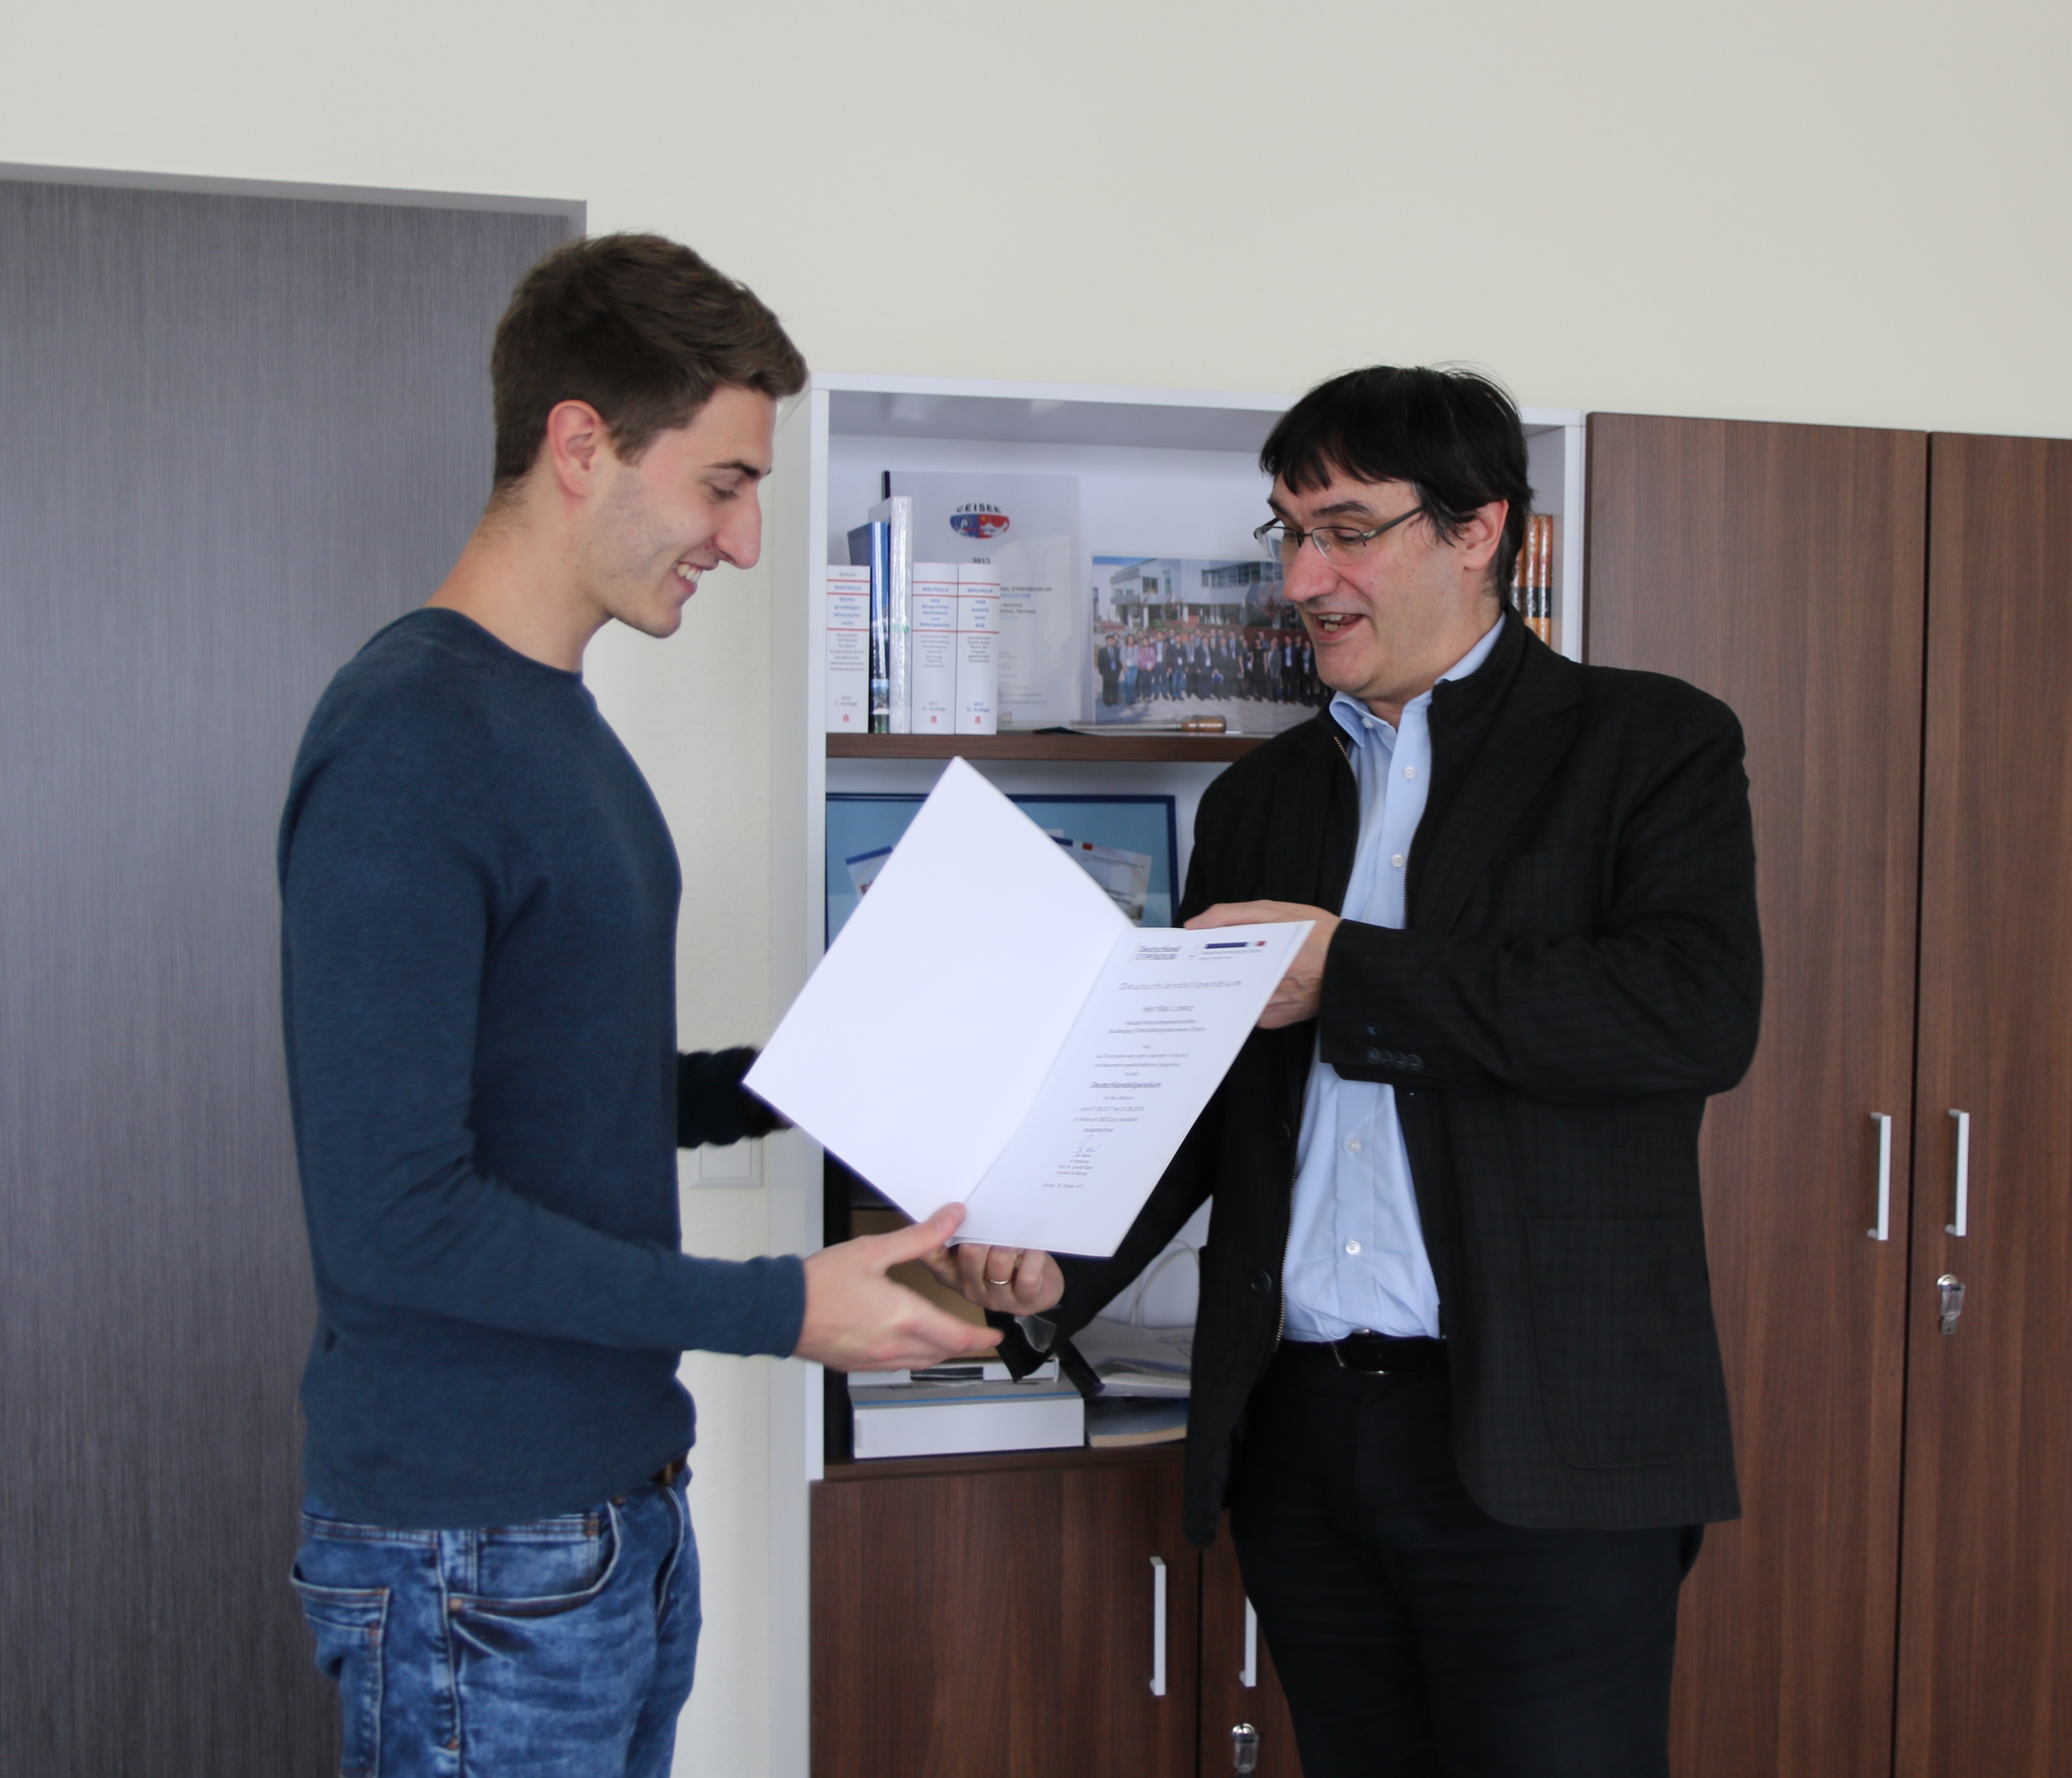 Foto: Hr. Prof. Kassel überreicht einem Studierende eine Urkunde zum Deutschlandstipendium.